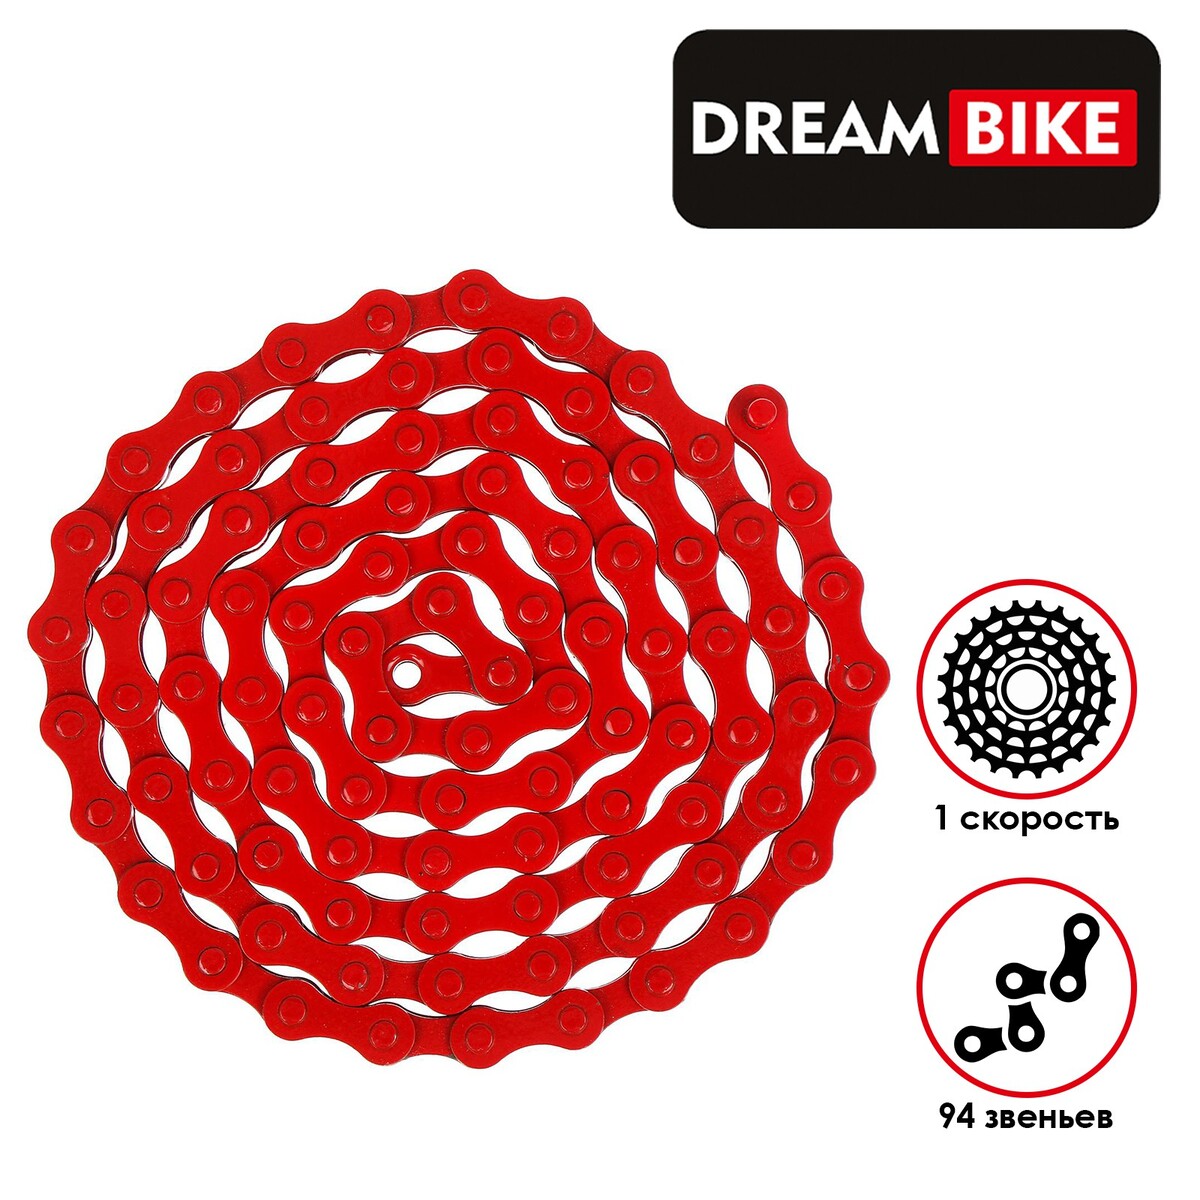 Цепь dream bike, 1 скорость, цвет красный критическая цепь том 30